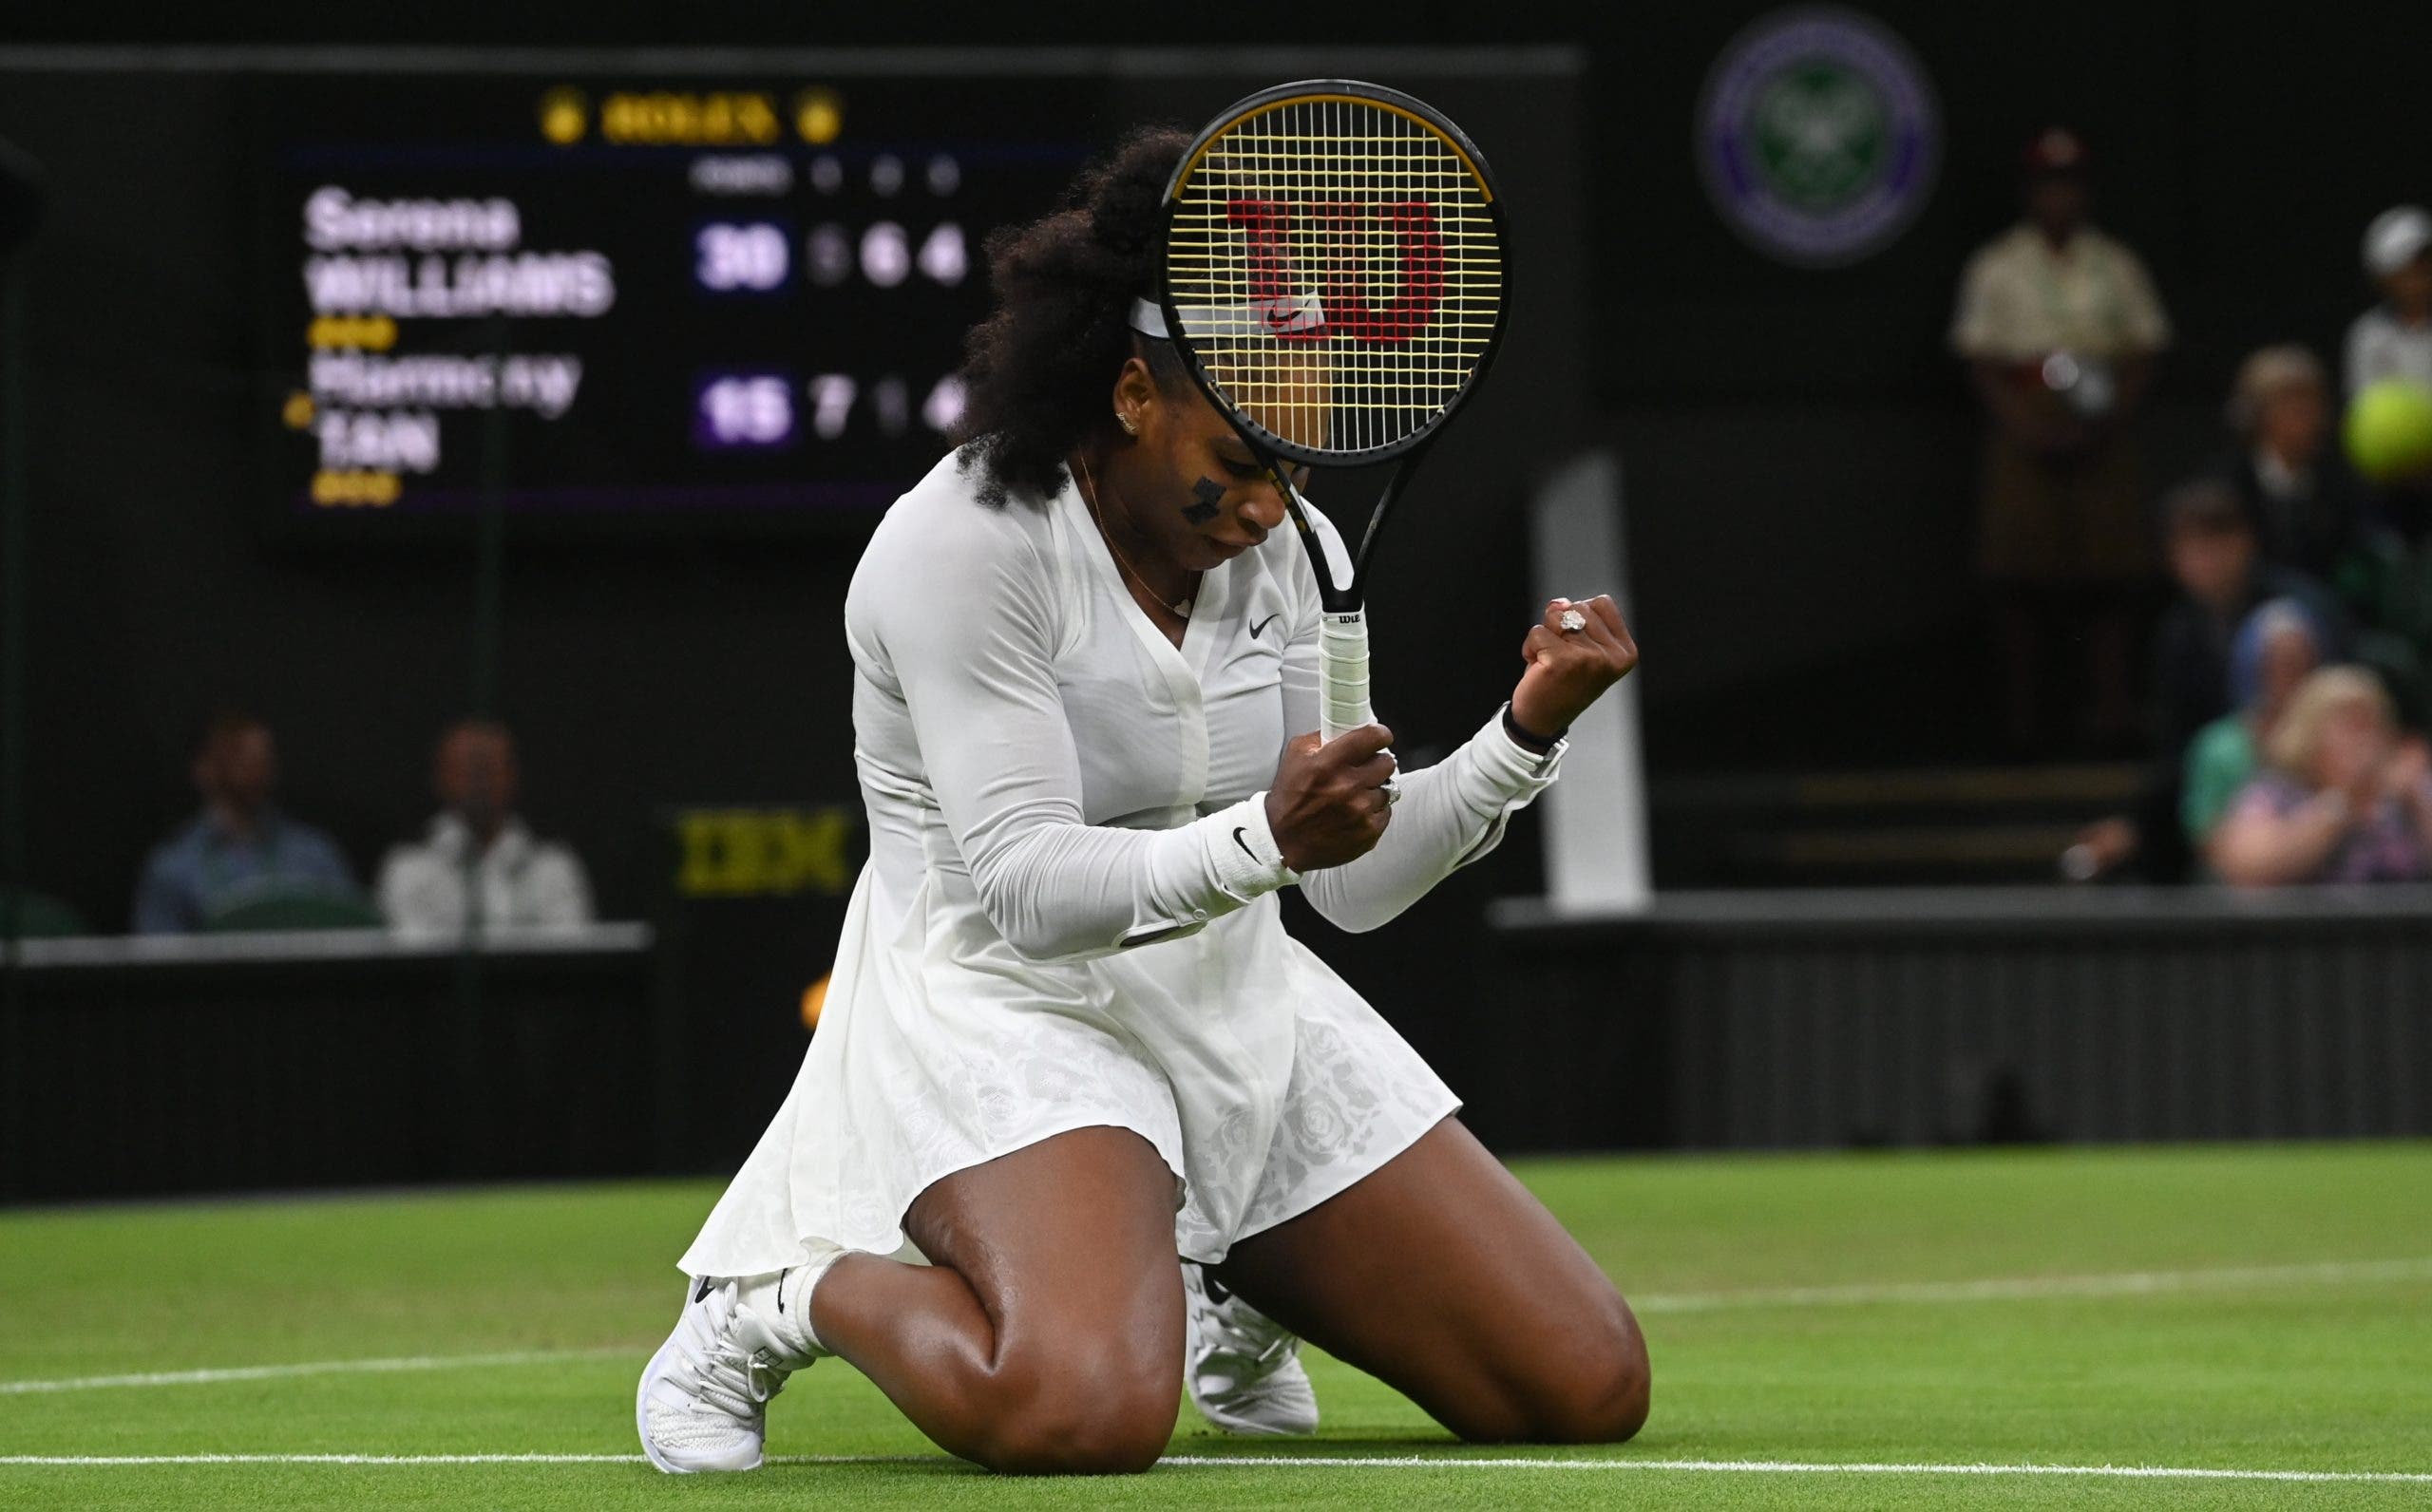 Serena Williams vence en Toronto a la española Nuria Párrizas Díaz